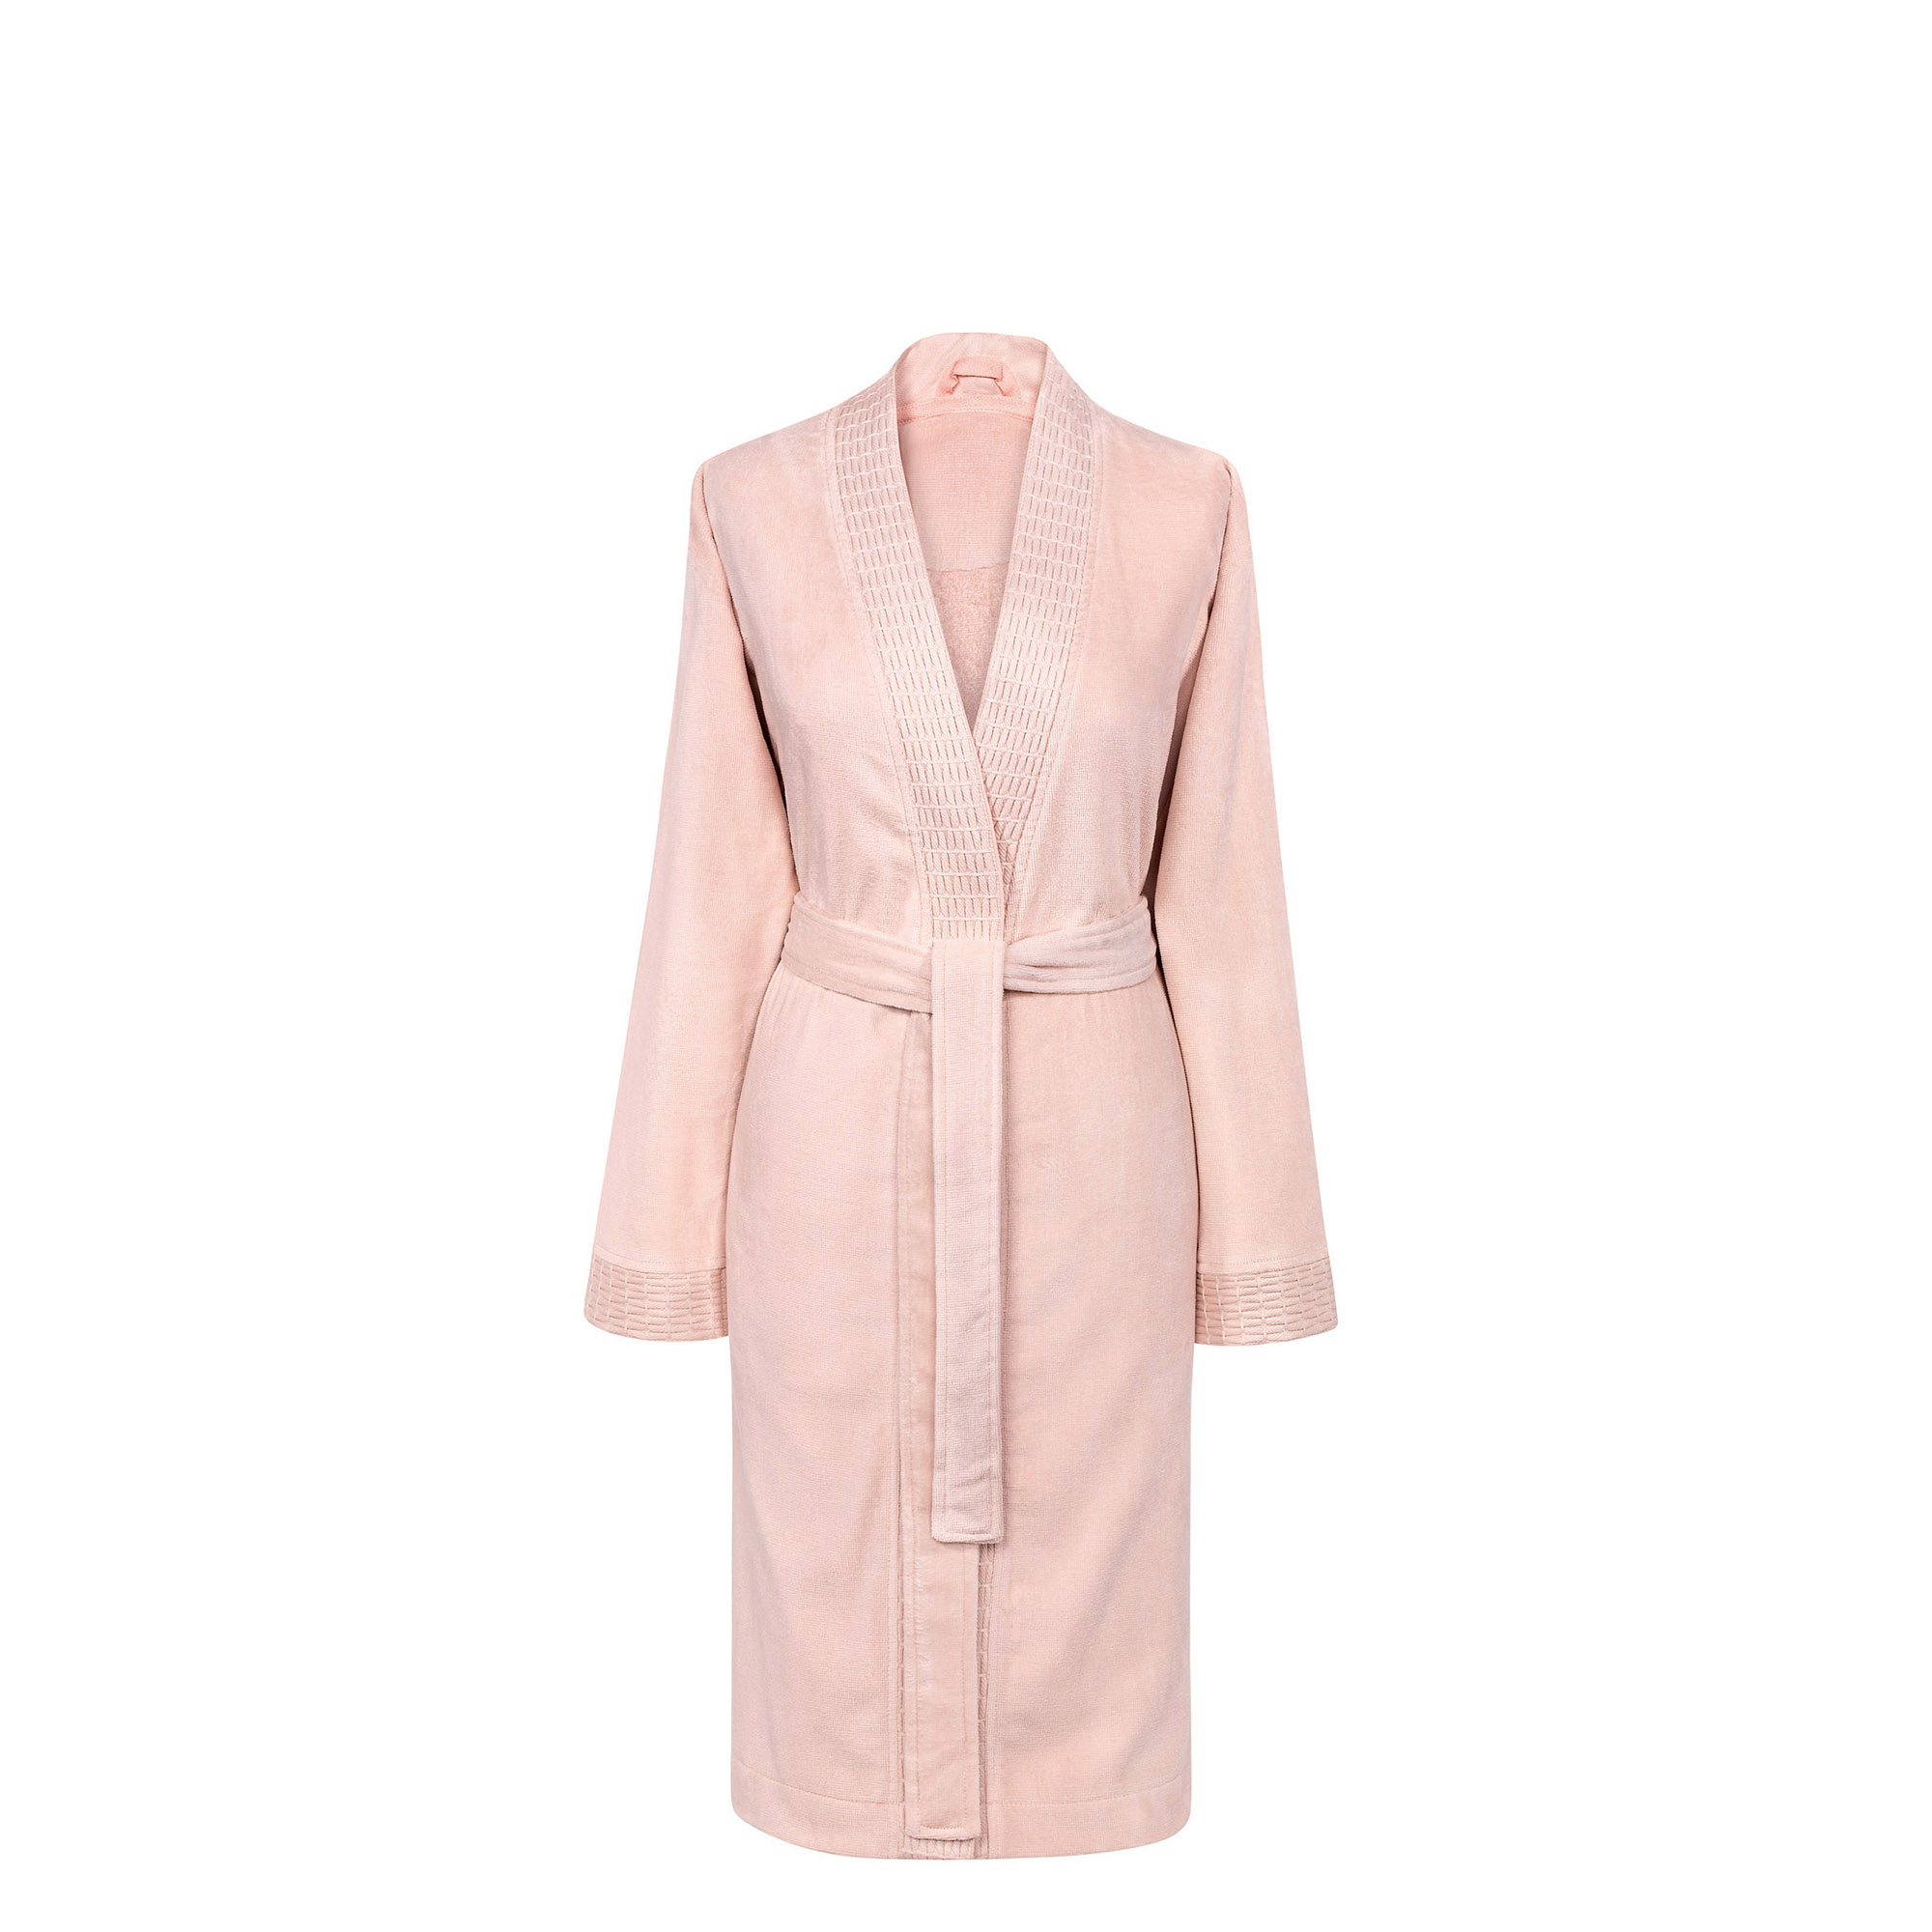 Банный халат Филоменто цвет: розовый (XL)